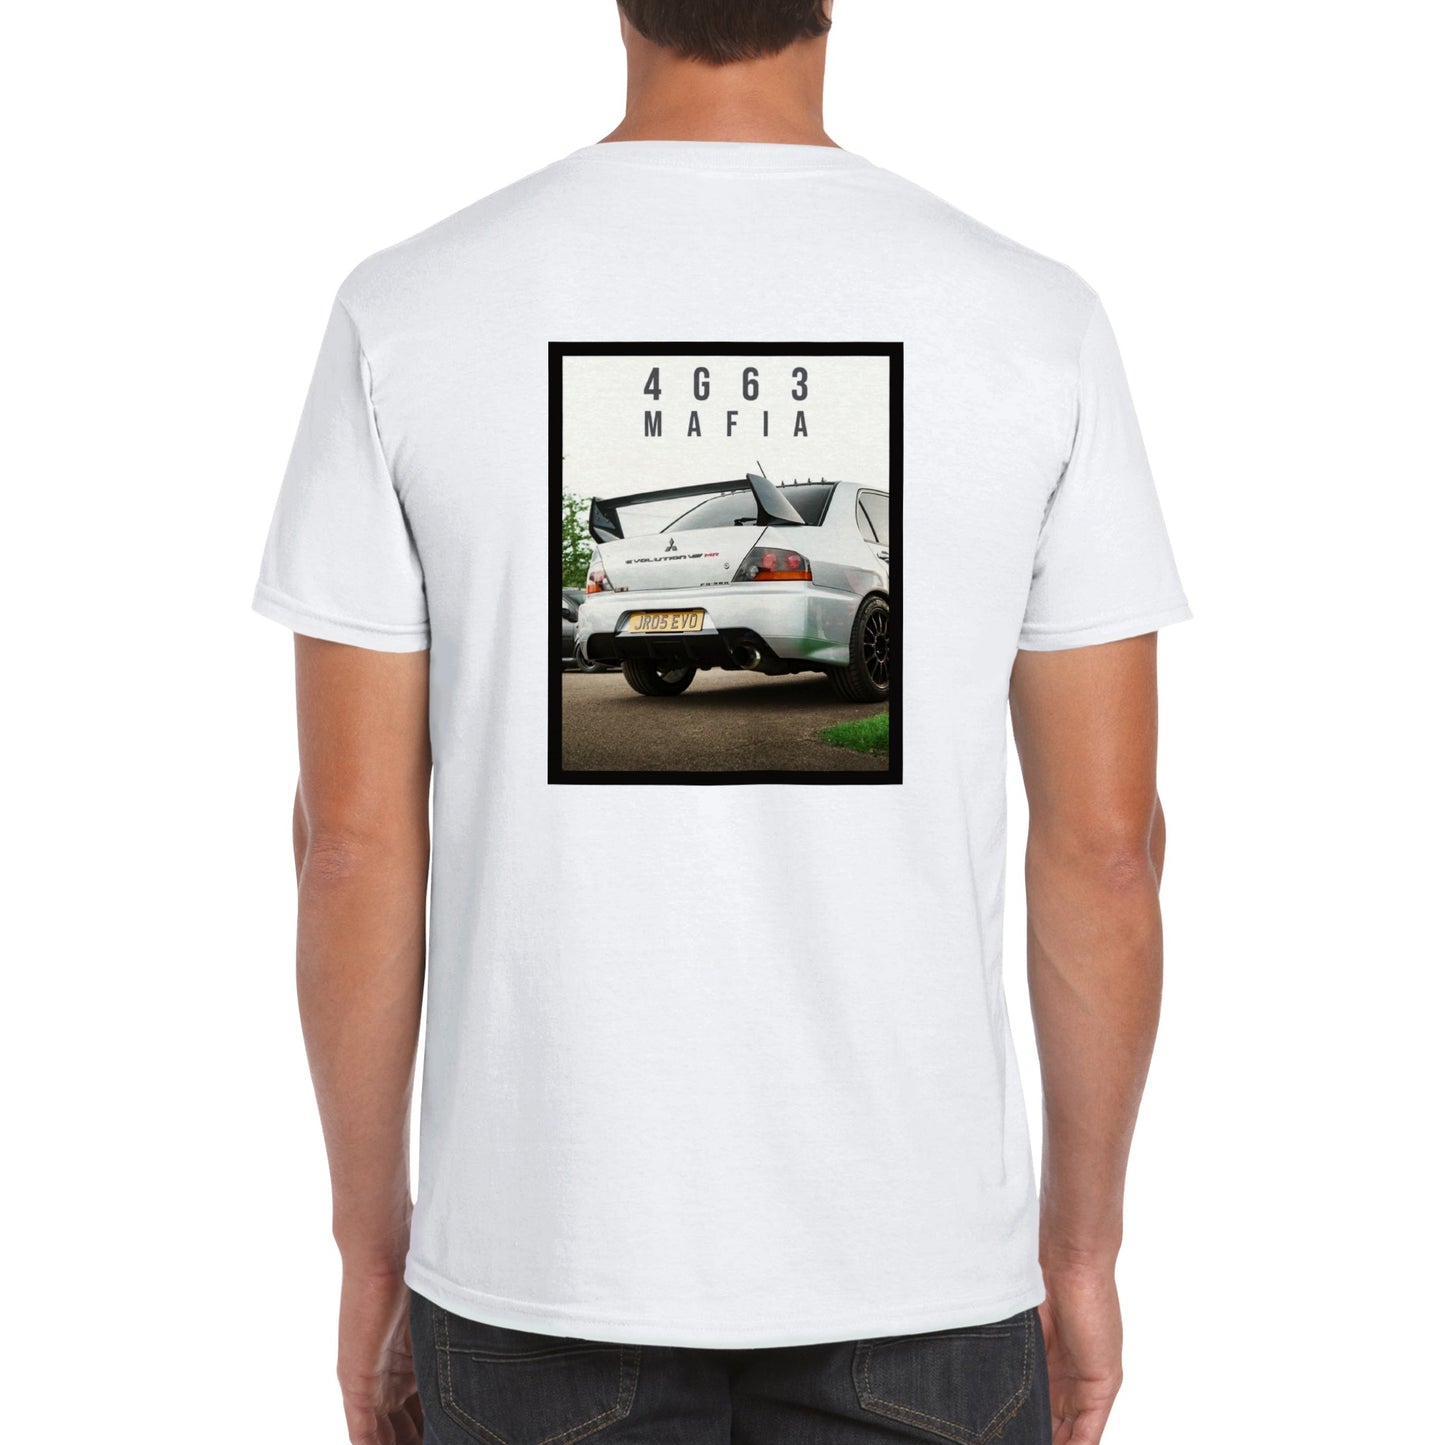 4G63 Mafia T-shirt